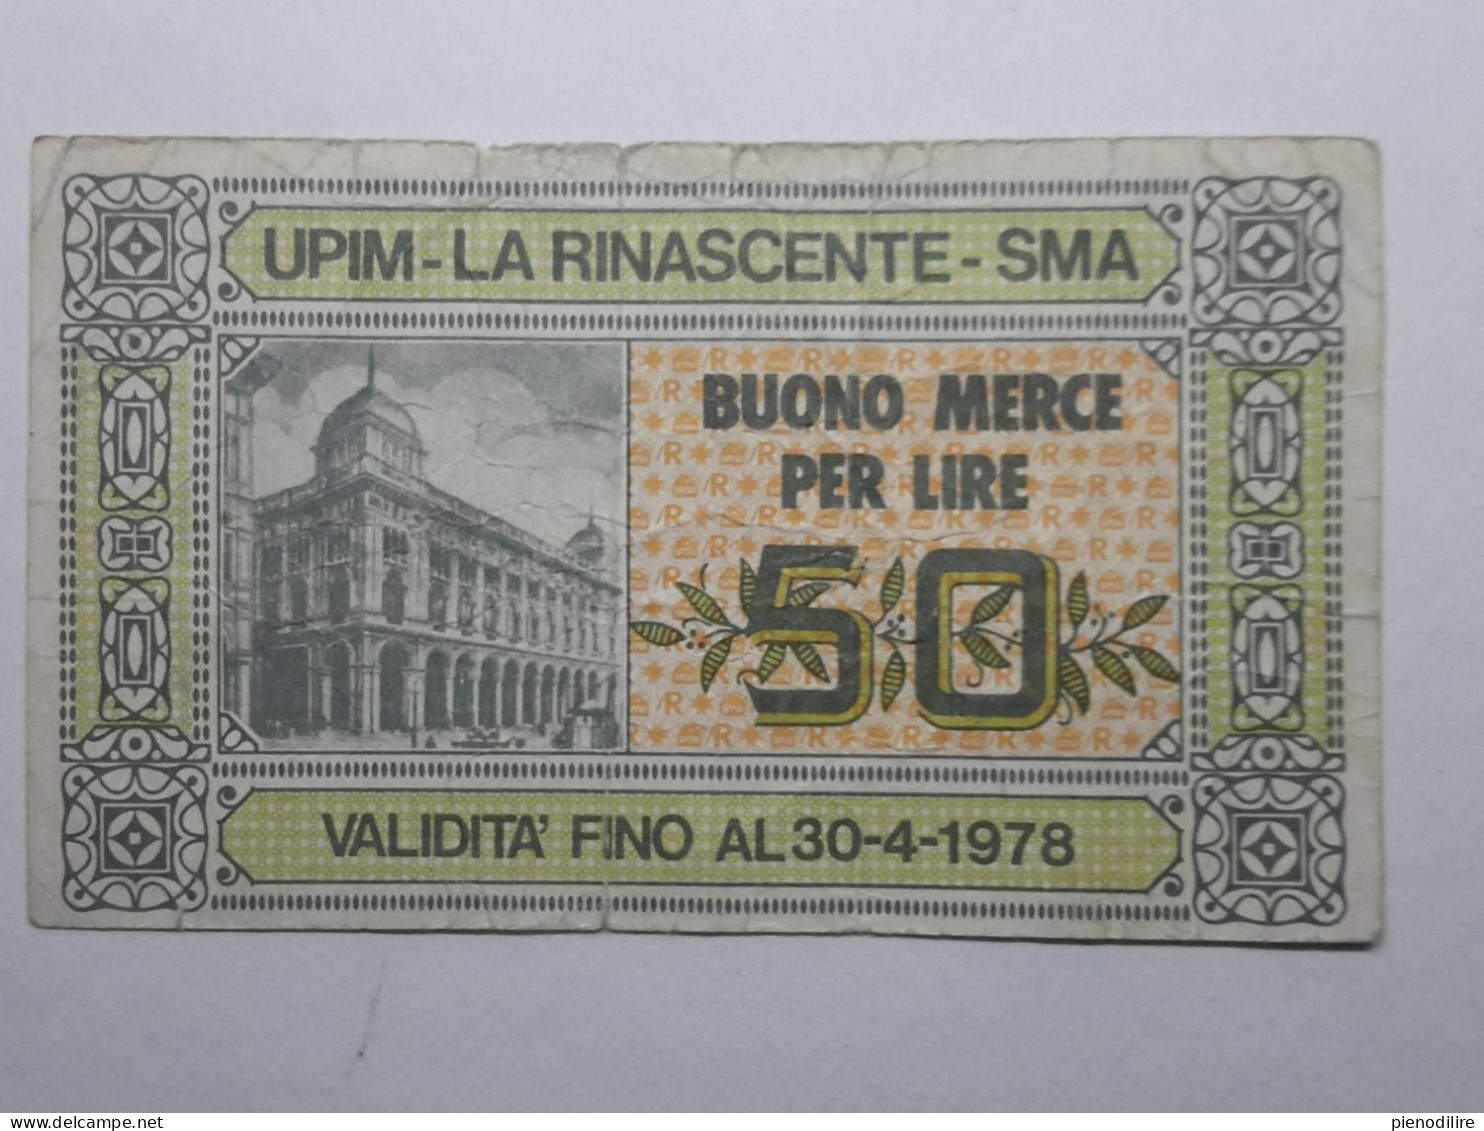 BANCONOTA BUONO D' ACQUISTO MERCE FINO A 50 LIRE UPIM LA RINASCENTE 1978 (A.10) - [10] Cheques En Mini-cheques